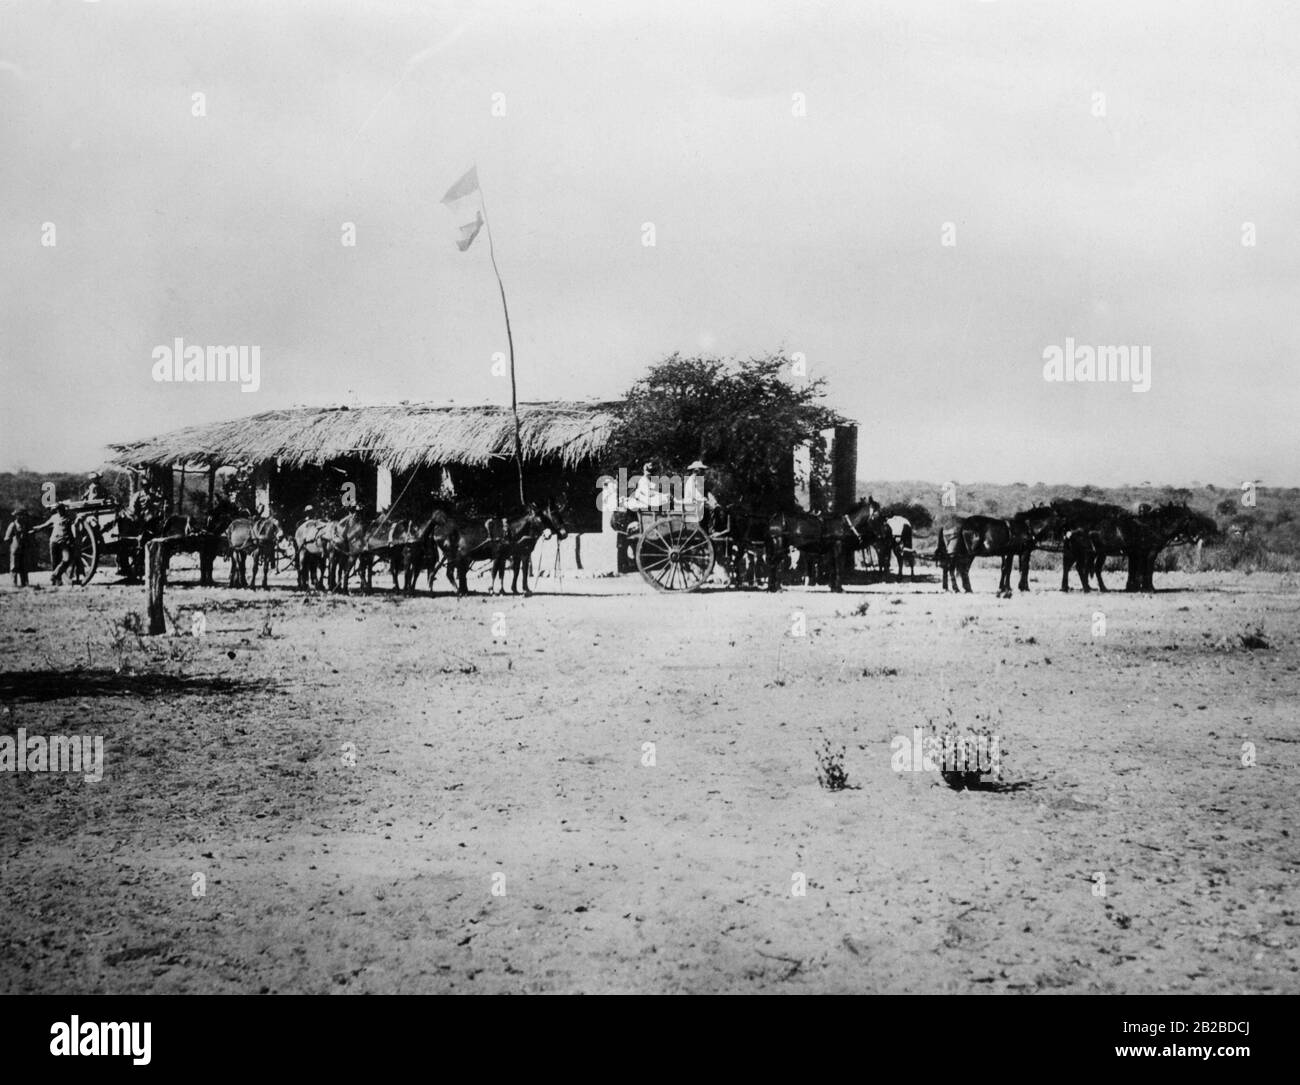 La stazione tedesca Otjitno, a 50 km da Grootfontein. Fu invasa il 17 gennaio 1904 dall'insurrezione Herero, che sta combattendo contro gli occupanti tedeschi. Foto Stock